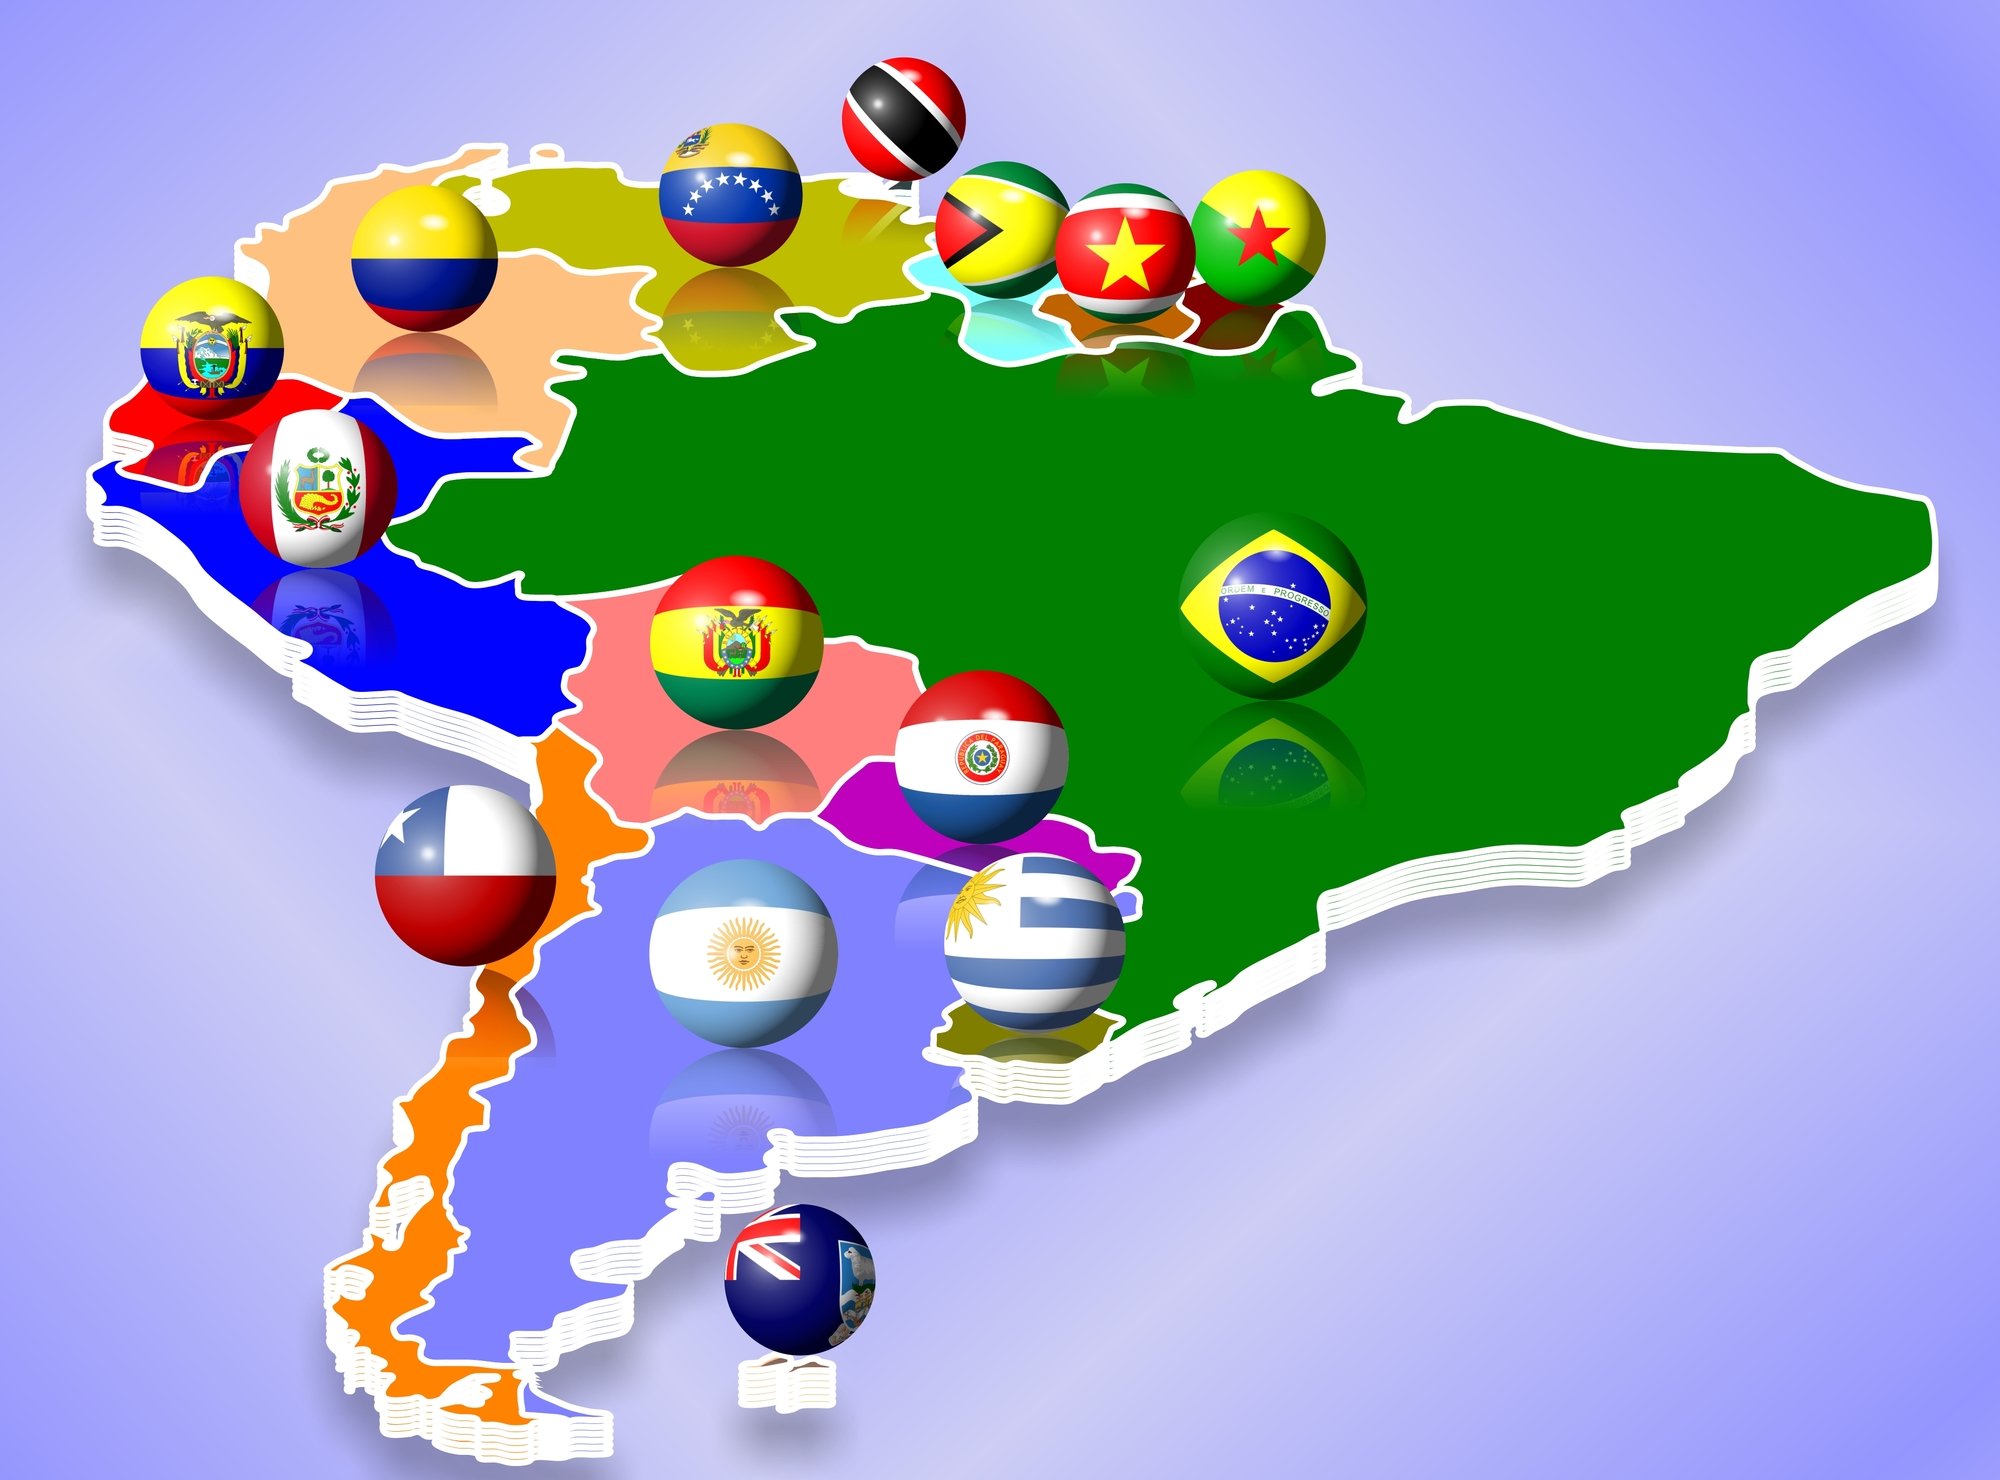 Idiomas da América do Sul: indo além do português e espanhol